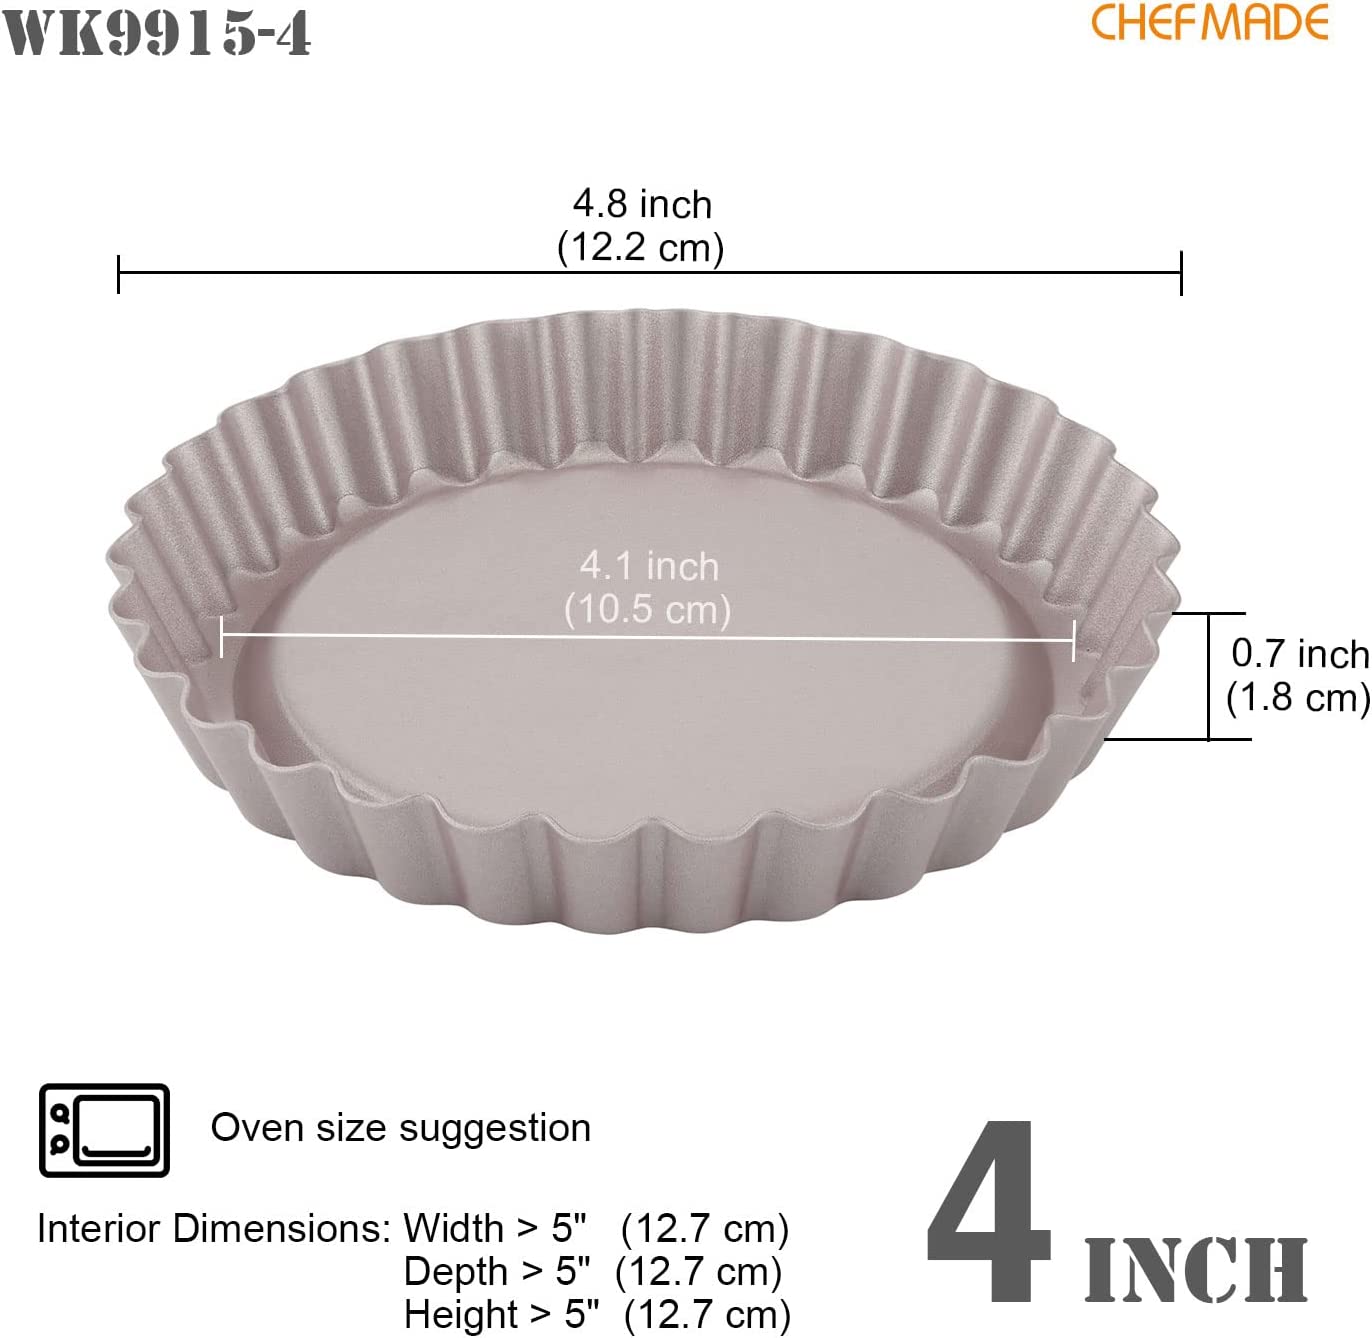 CHEFMADE Mini Bundt Pan Set, 4-Inch 4Pcs Non-Stick Tube Pan